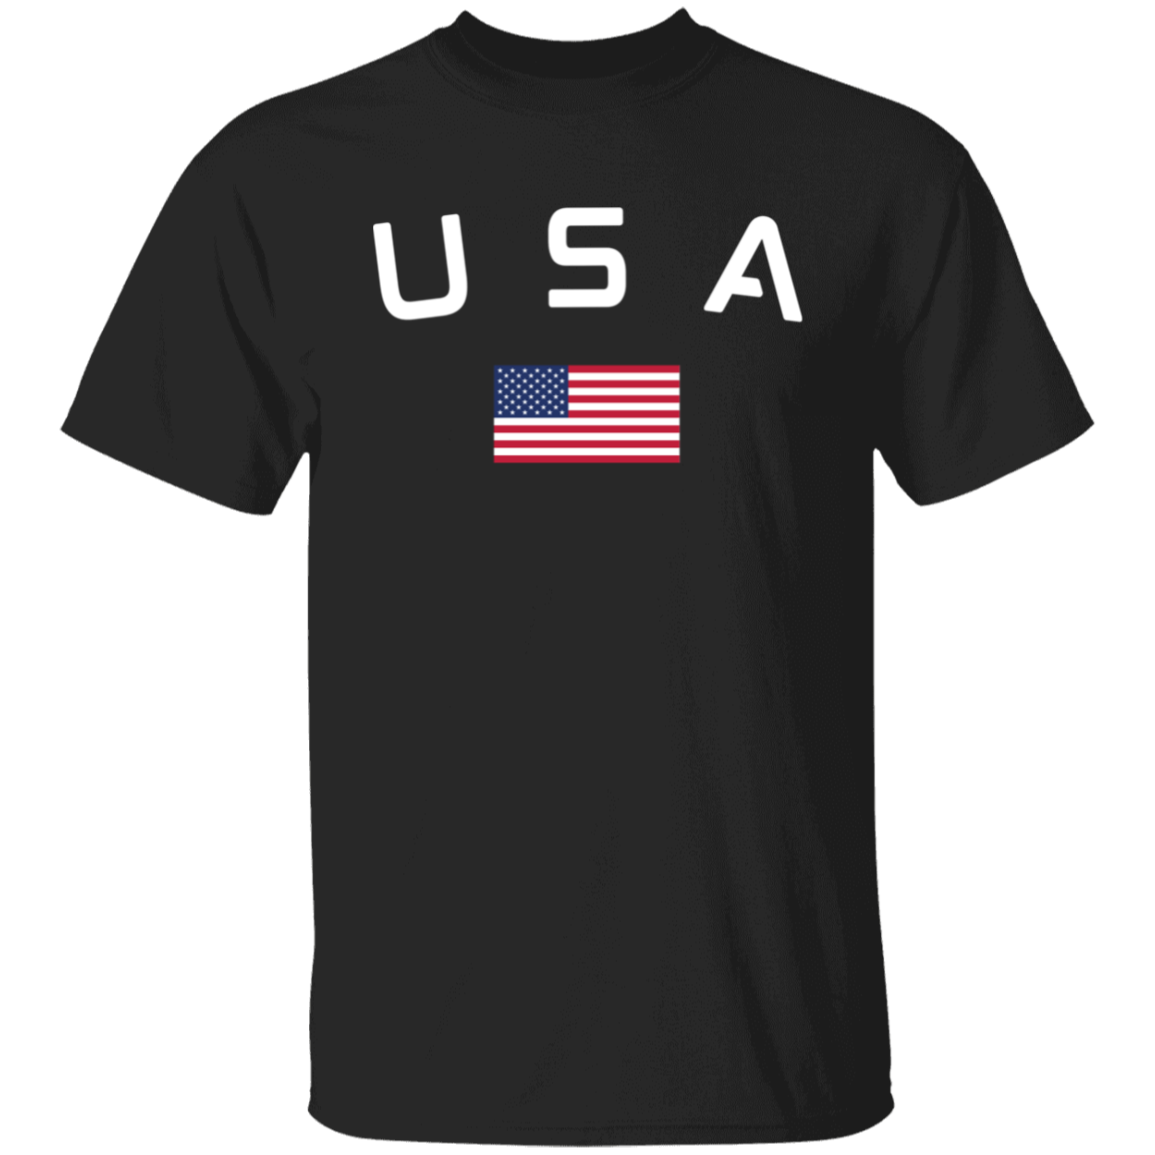 USA and Flag Logo T Shirt - Unisex